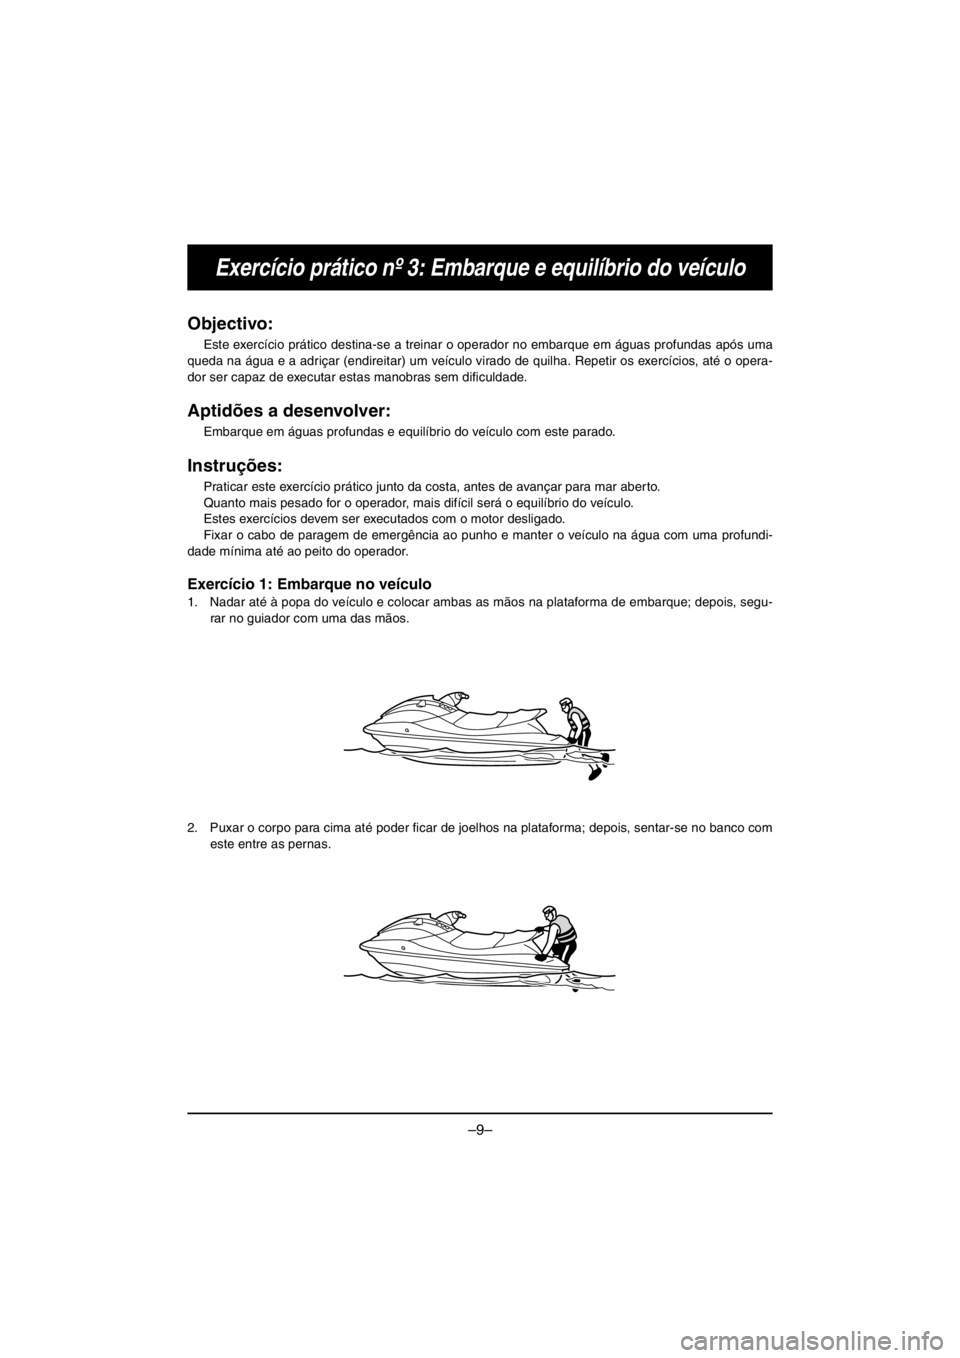 YAMAHA V1 2016  Owners Manual –9–
Exercício prático nº 3: Embarque e equilíbrio do veículo
Objectivo: 
Este exercício prático destina-se a treinar o operador no embarque em águas profundas após uma
queda na água e a 